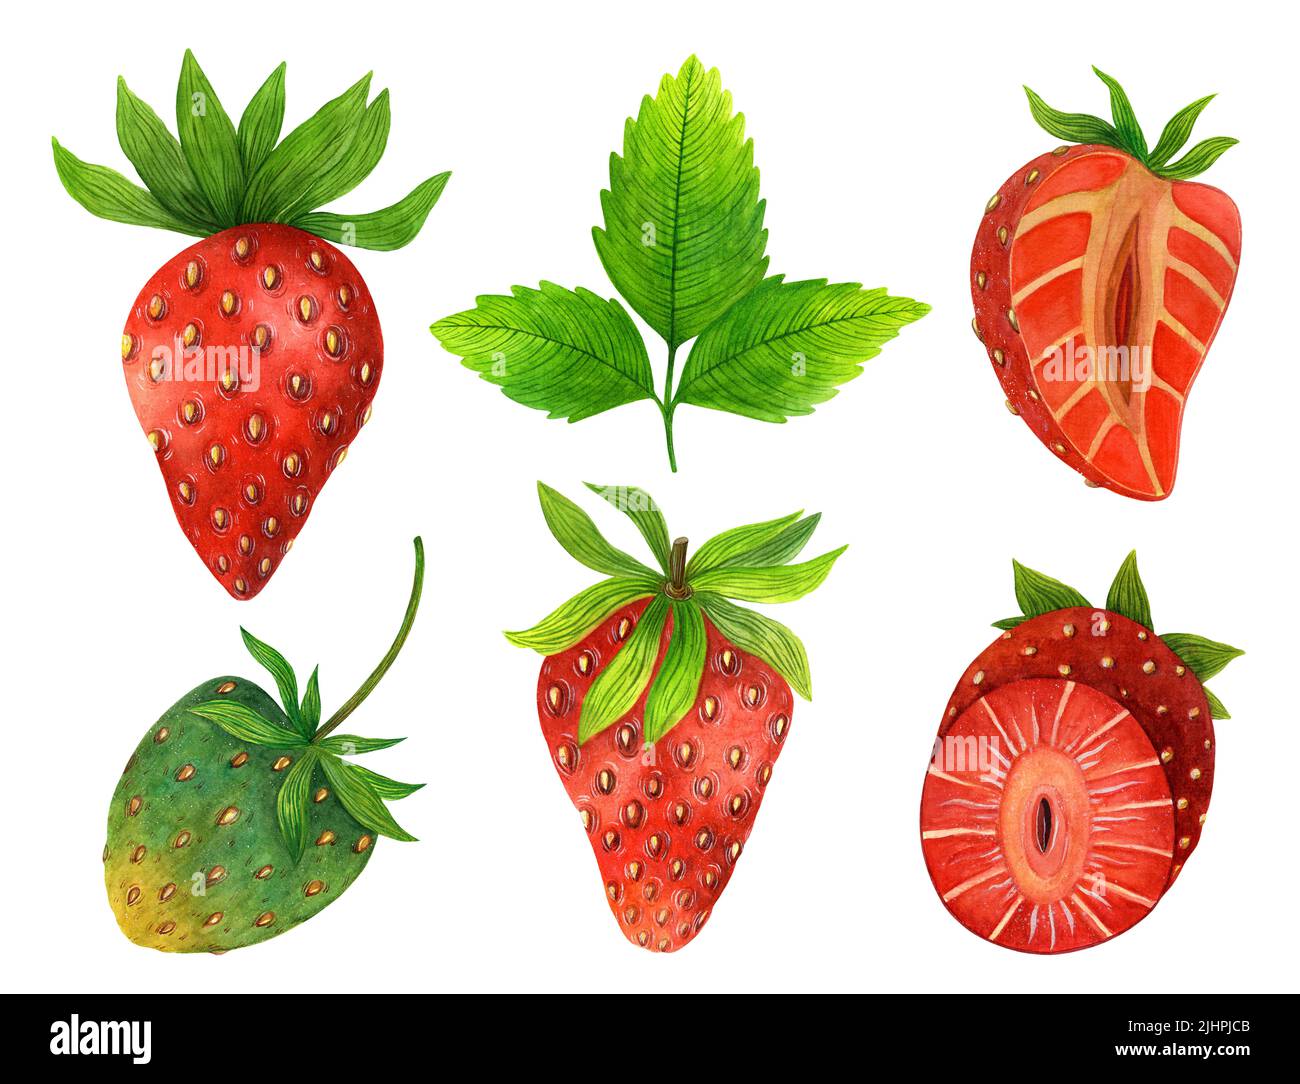 Acuarela de fresas frescas y jugosas. Baya roja entera, cortada por la mitad, fruta verde inmadura, hojas. Ilustración de comida dibujada a mano aislada en blanco. Foto de stock